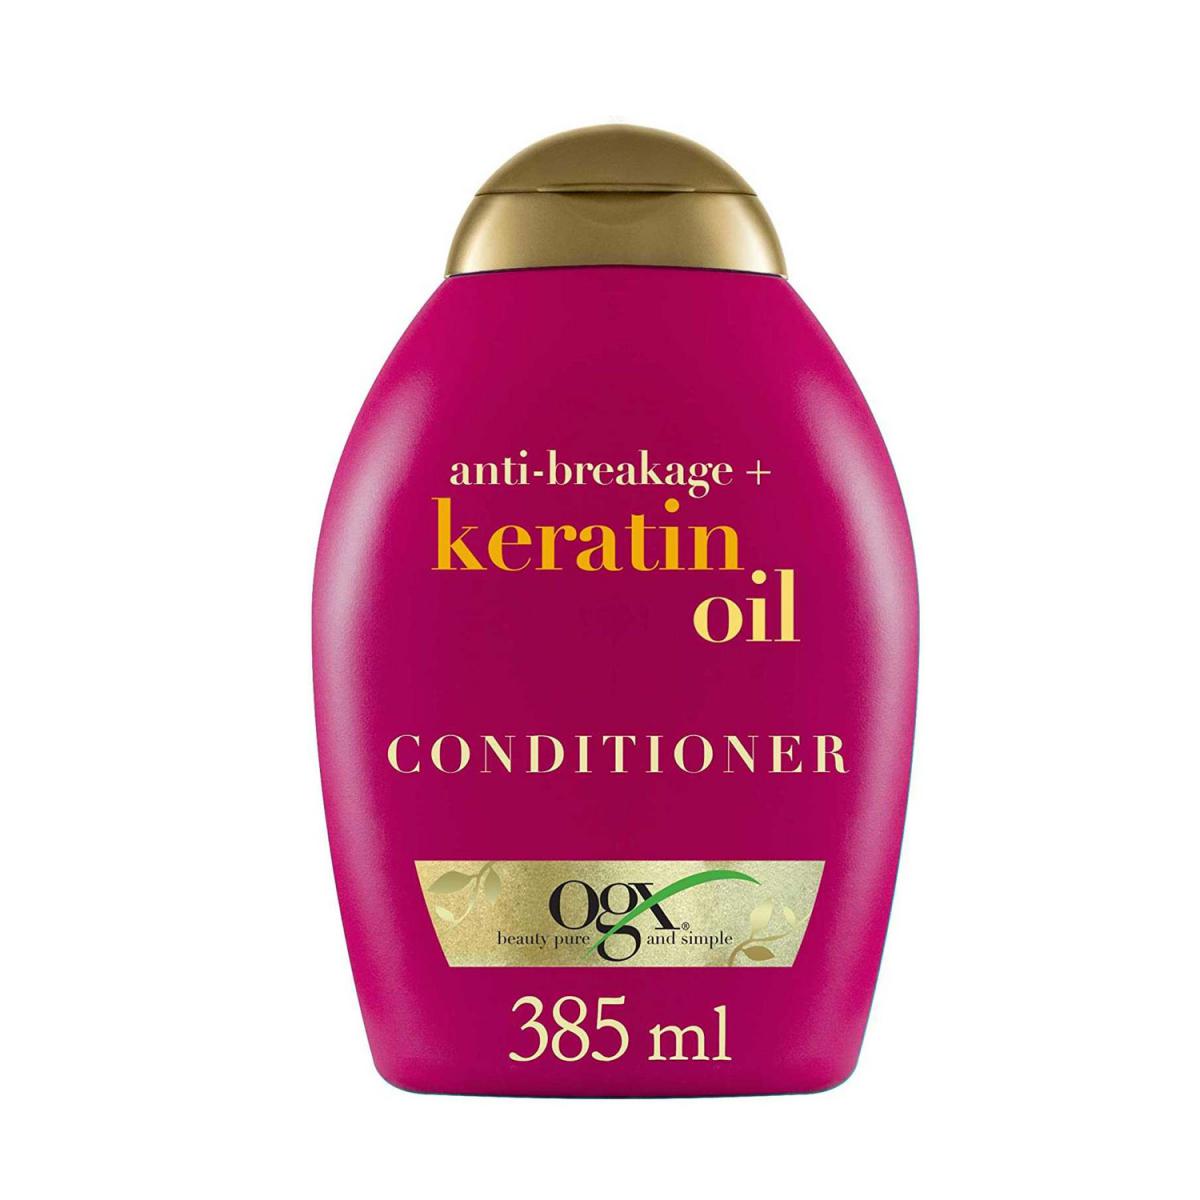 نرم کننده روغن کراتین بدون سولفات، تقویت مو، ضد موخوره و شکستگی - OGX Anti-Breakage Keratin Oil Conditioner 385ml